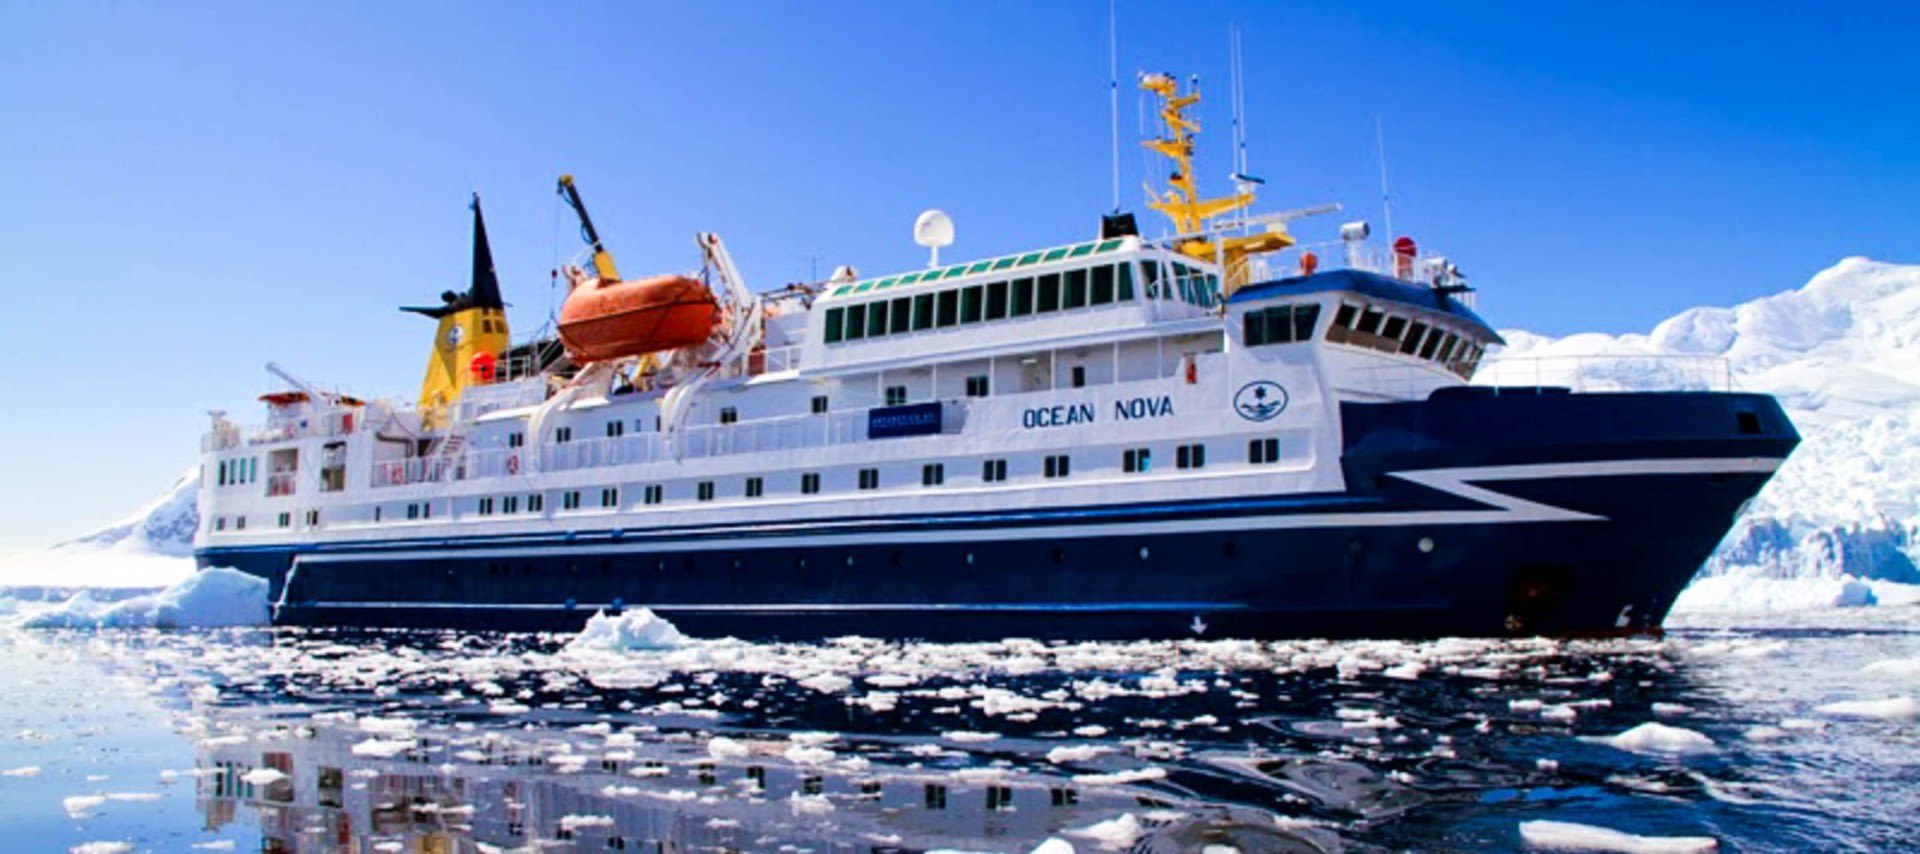 ushuaia antarctica cruise